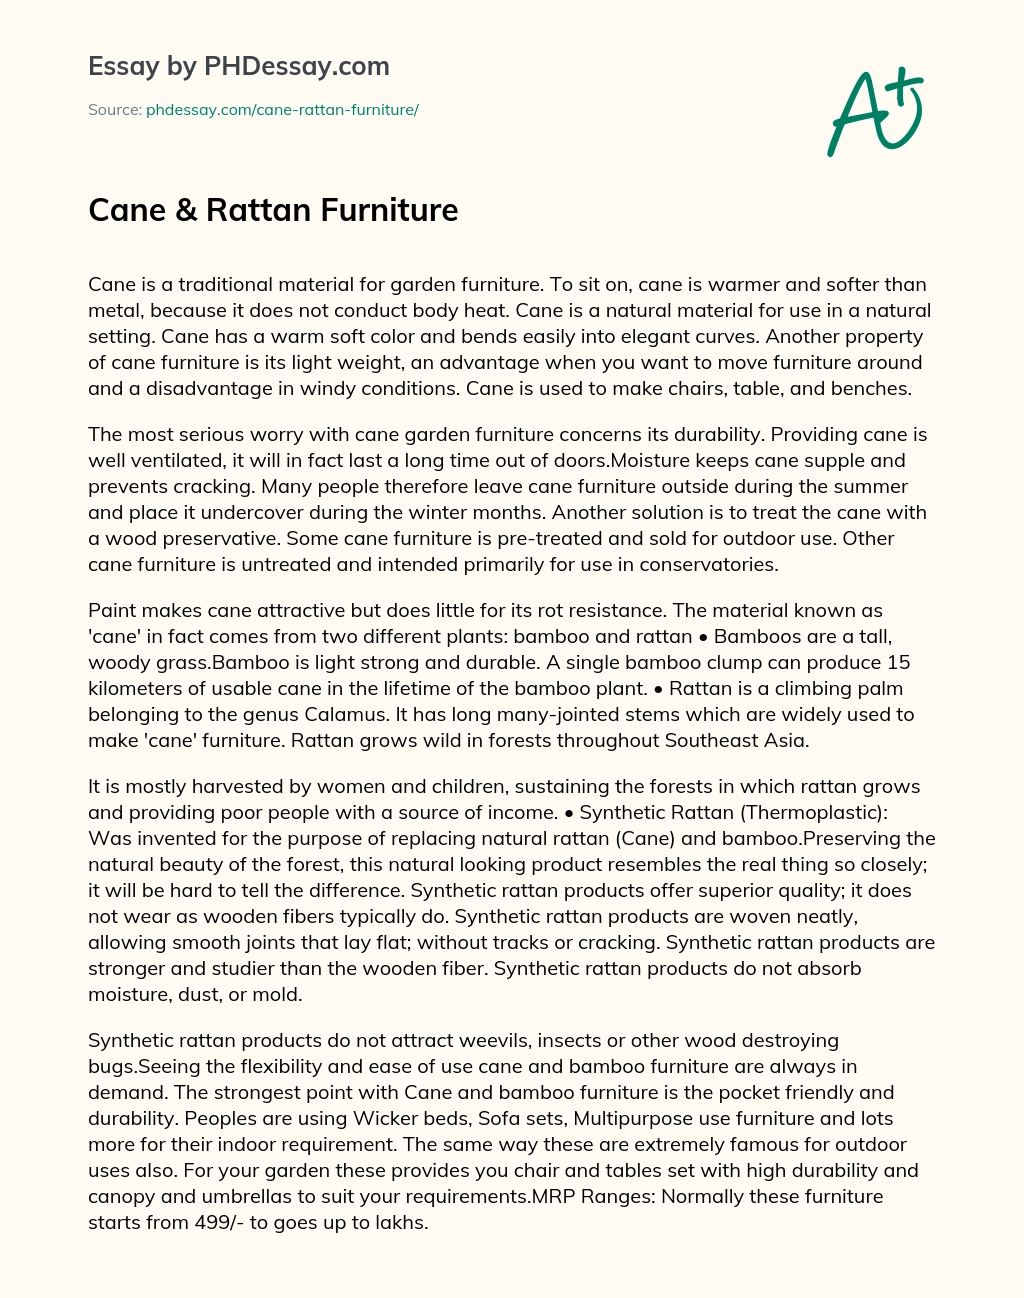 Cane & Rattan Furniture essay